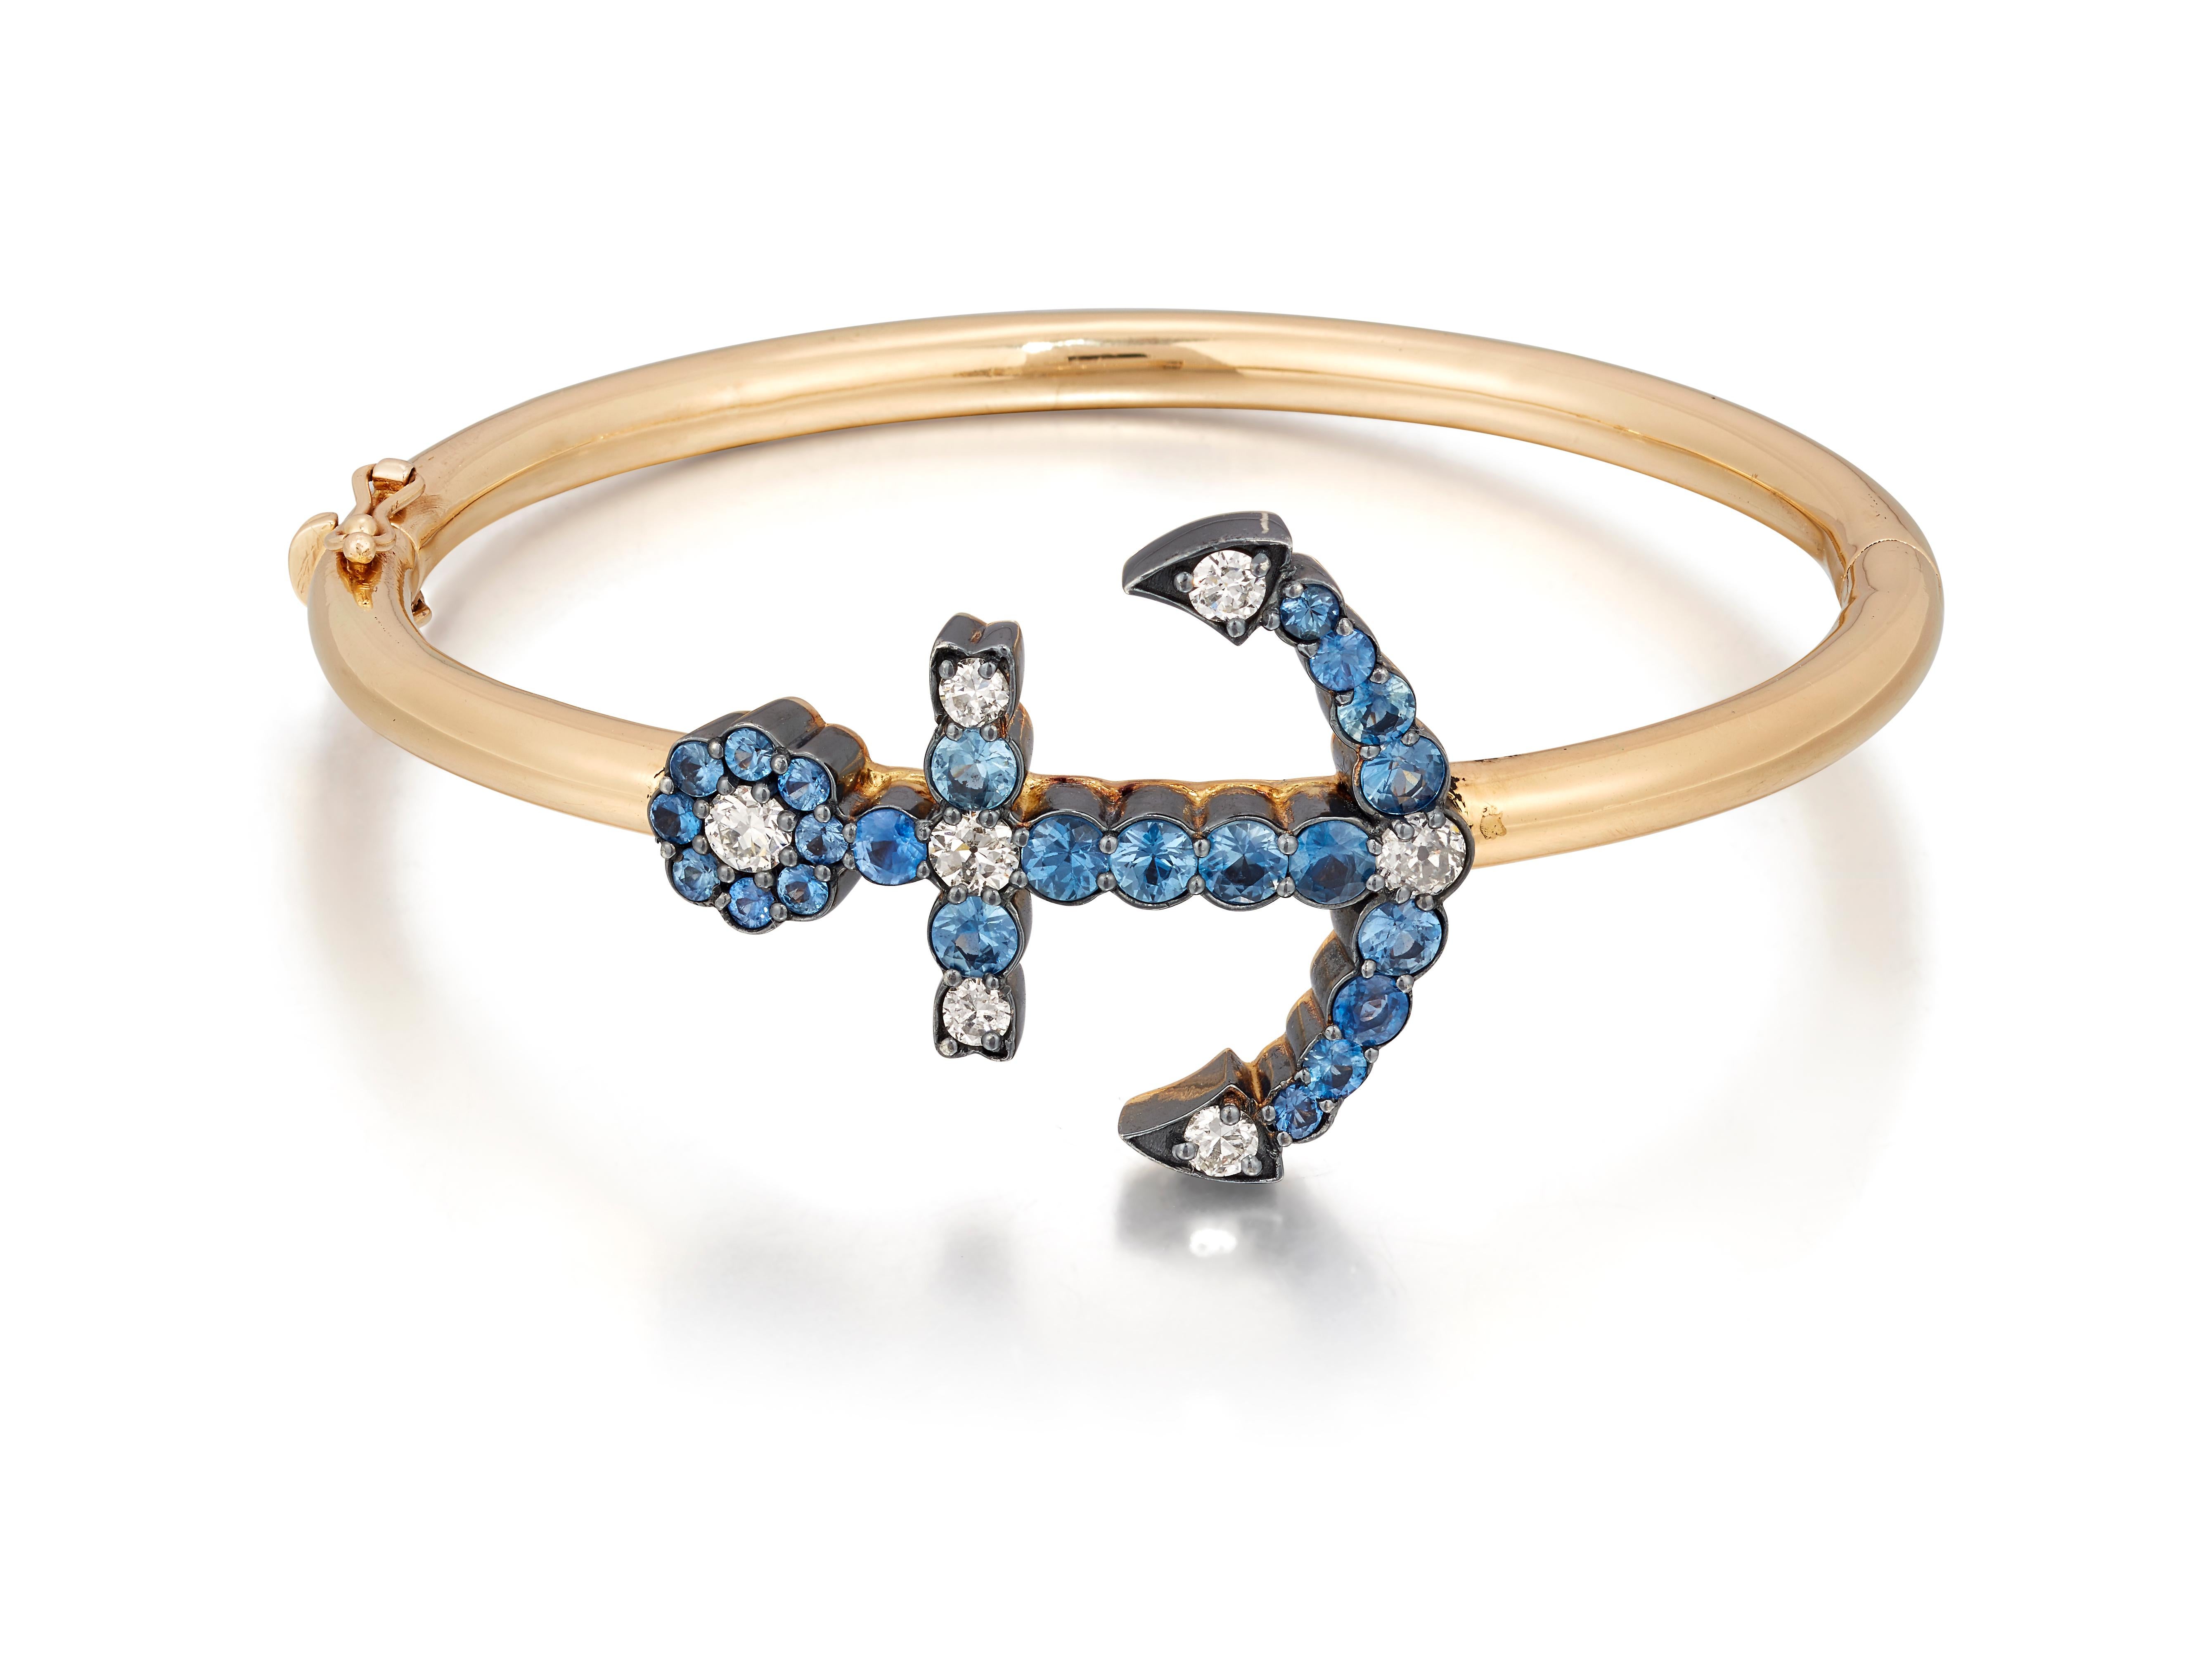 Magnifique bracelet rigide en forme d'ancre, serti de diamants et de saphir.

L'ancre en saphir de taille circulaire et en diamant de taille ancienne. L'ancre mesure 3,2 cm de long, la circonférence intérieure du bangle est de 15,7 cm. Le fermoir